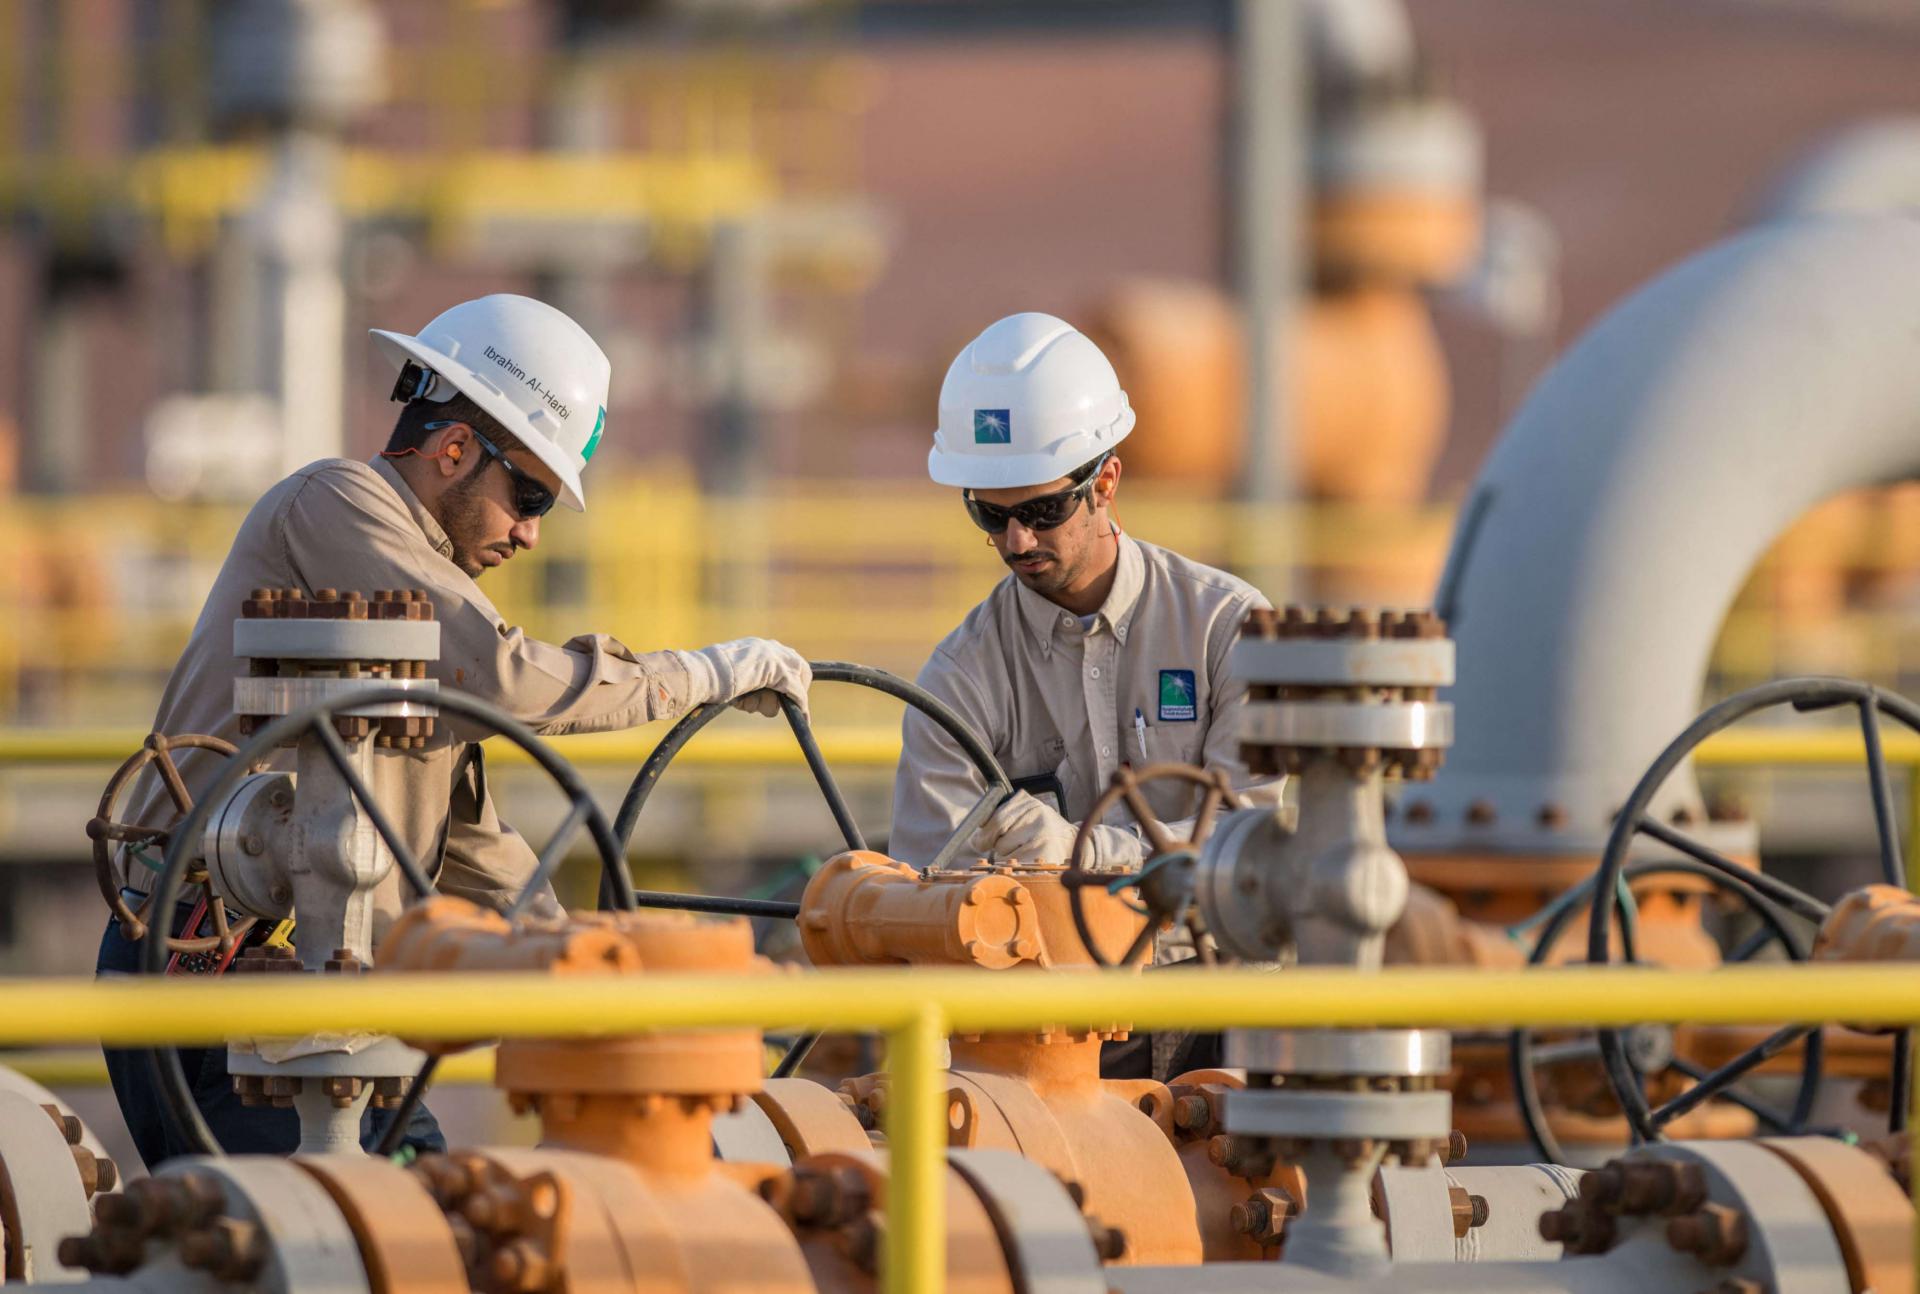 أرامكو حققت قفزة بـ30 بالمئة في أرباح الربع الأول بفضل انتعاش أسعار النفط